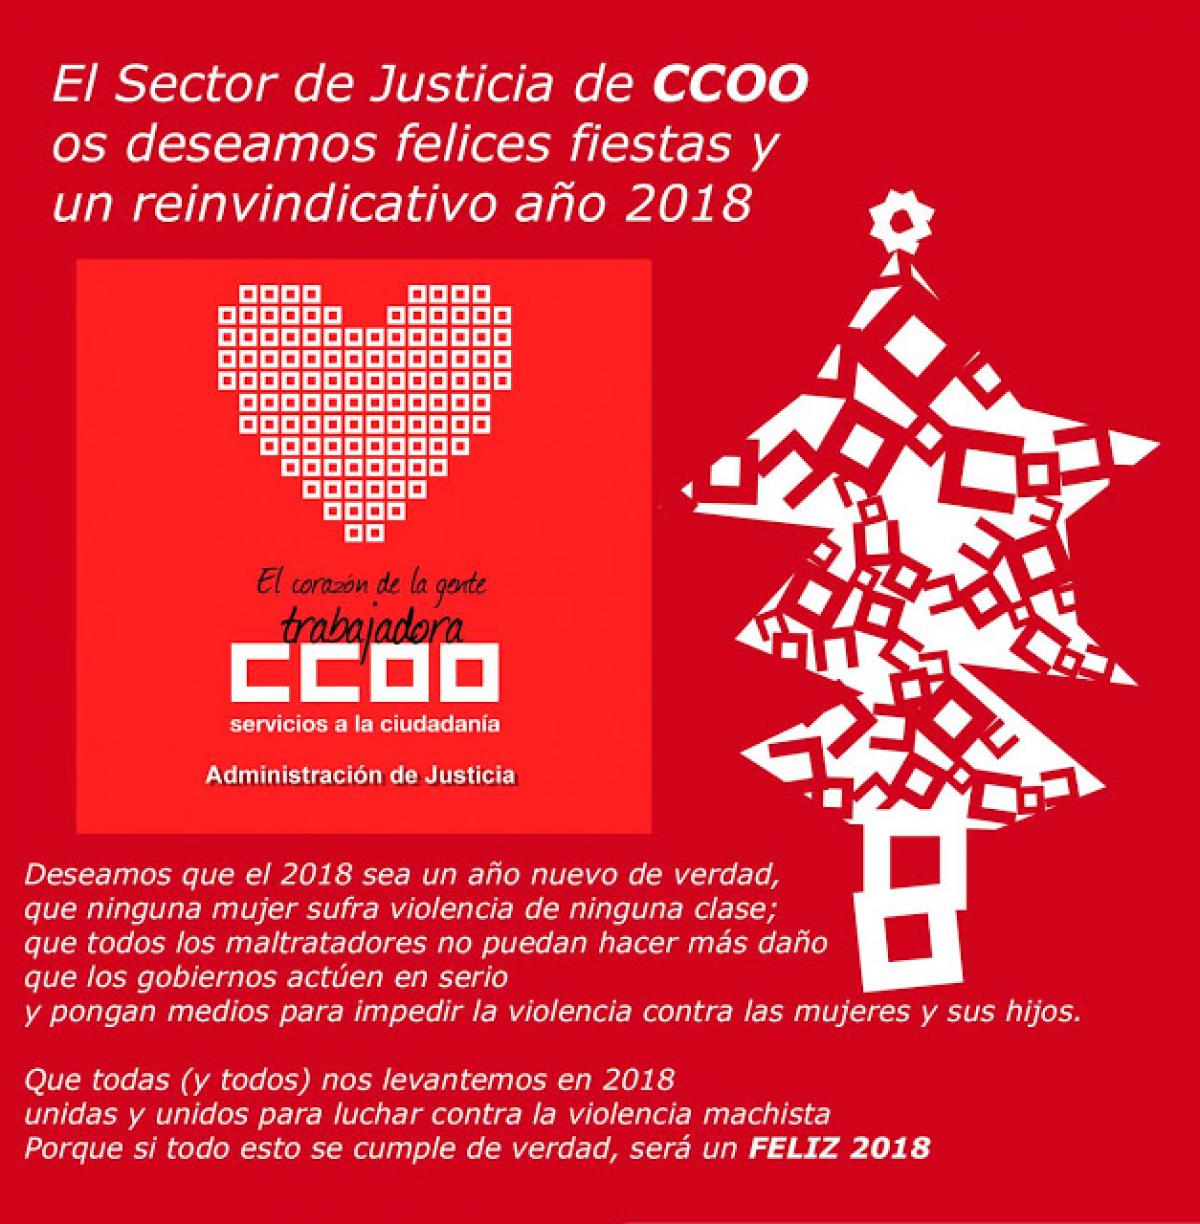 CCOO JUSTICIA os desea unas felices fiestas y un feliz ao 2018